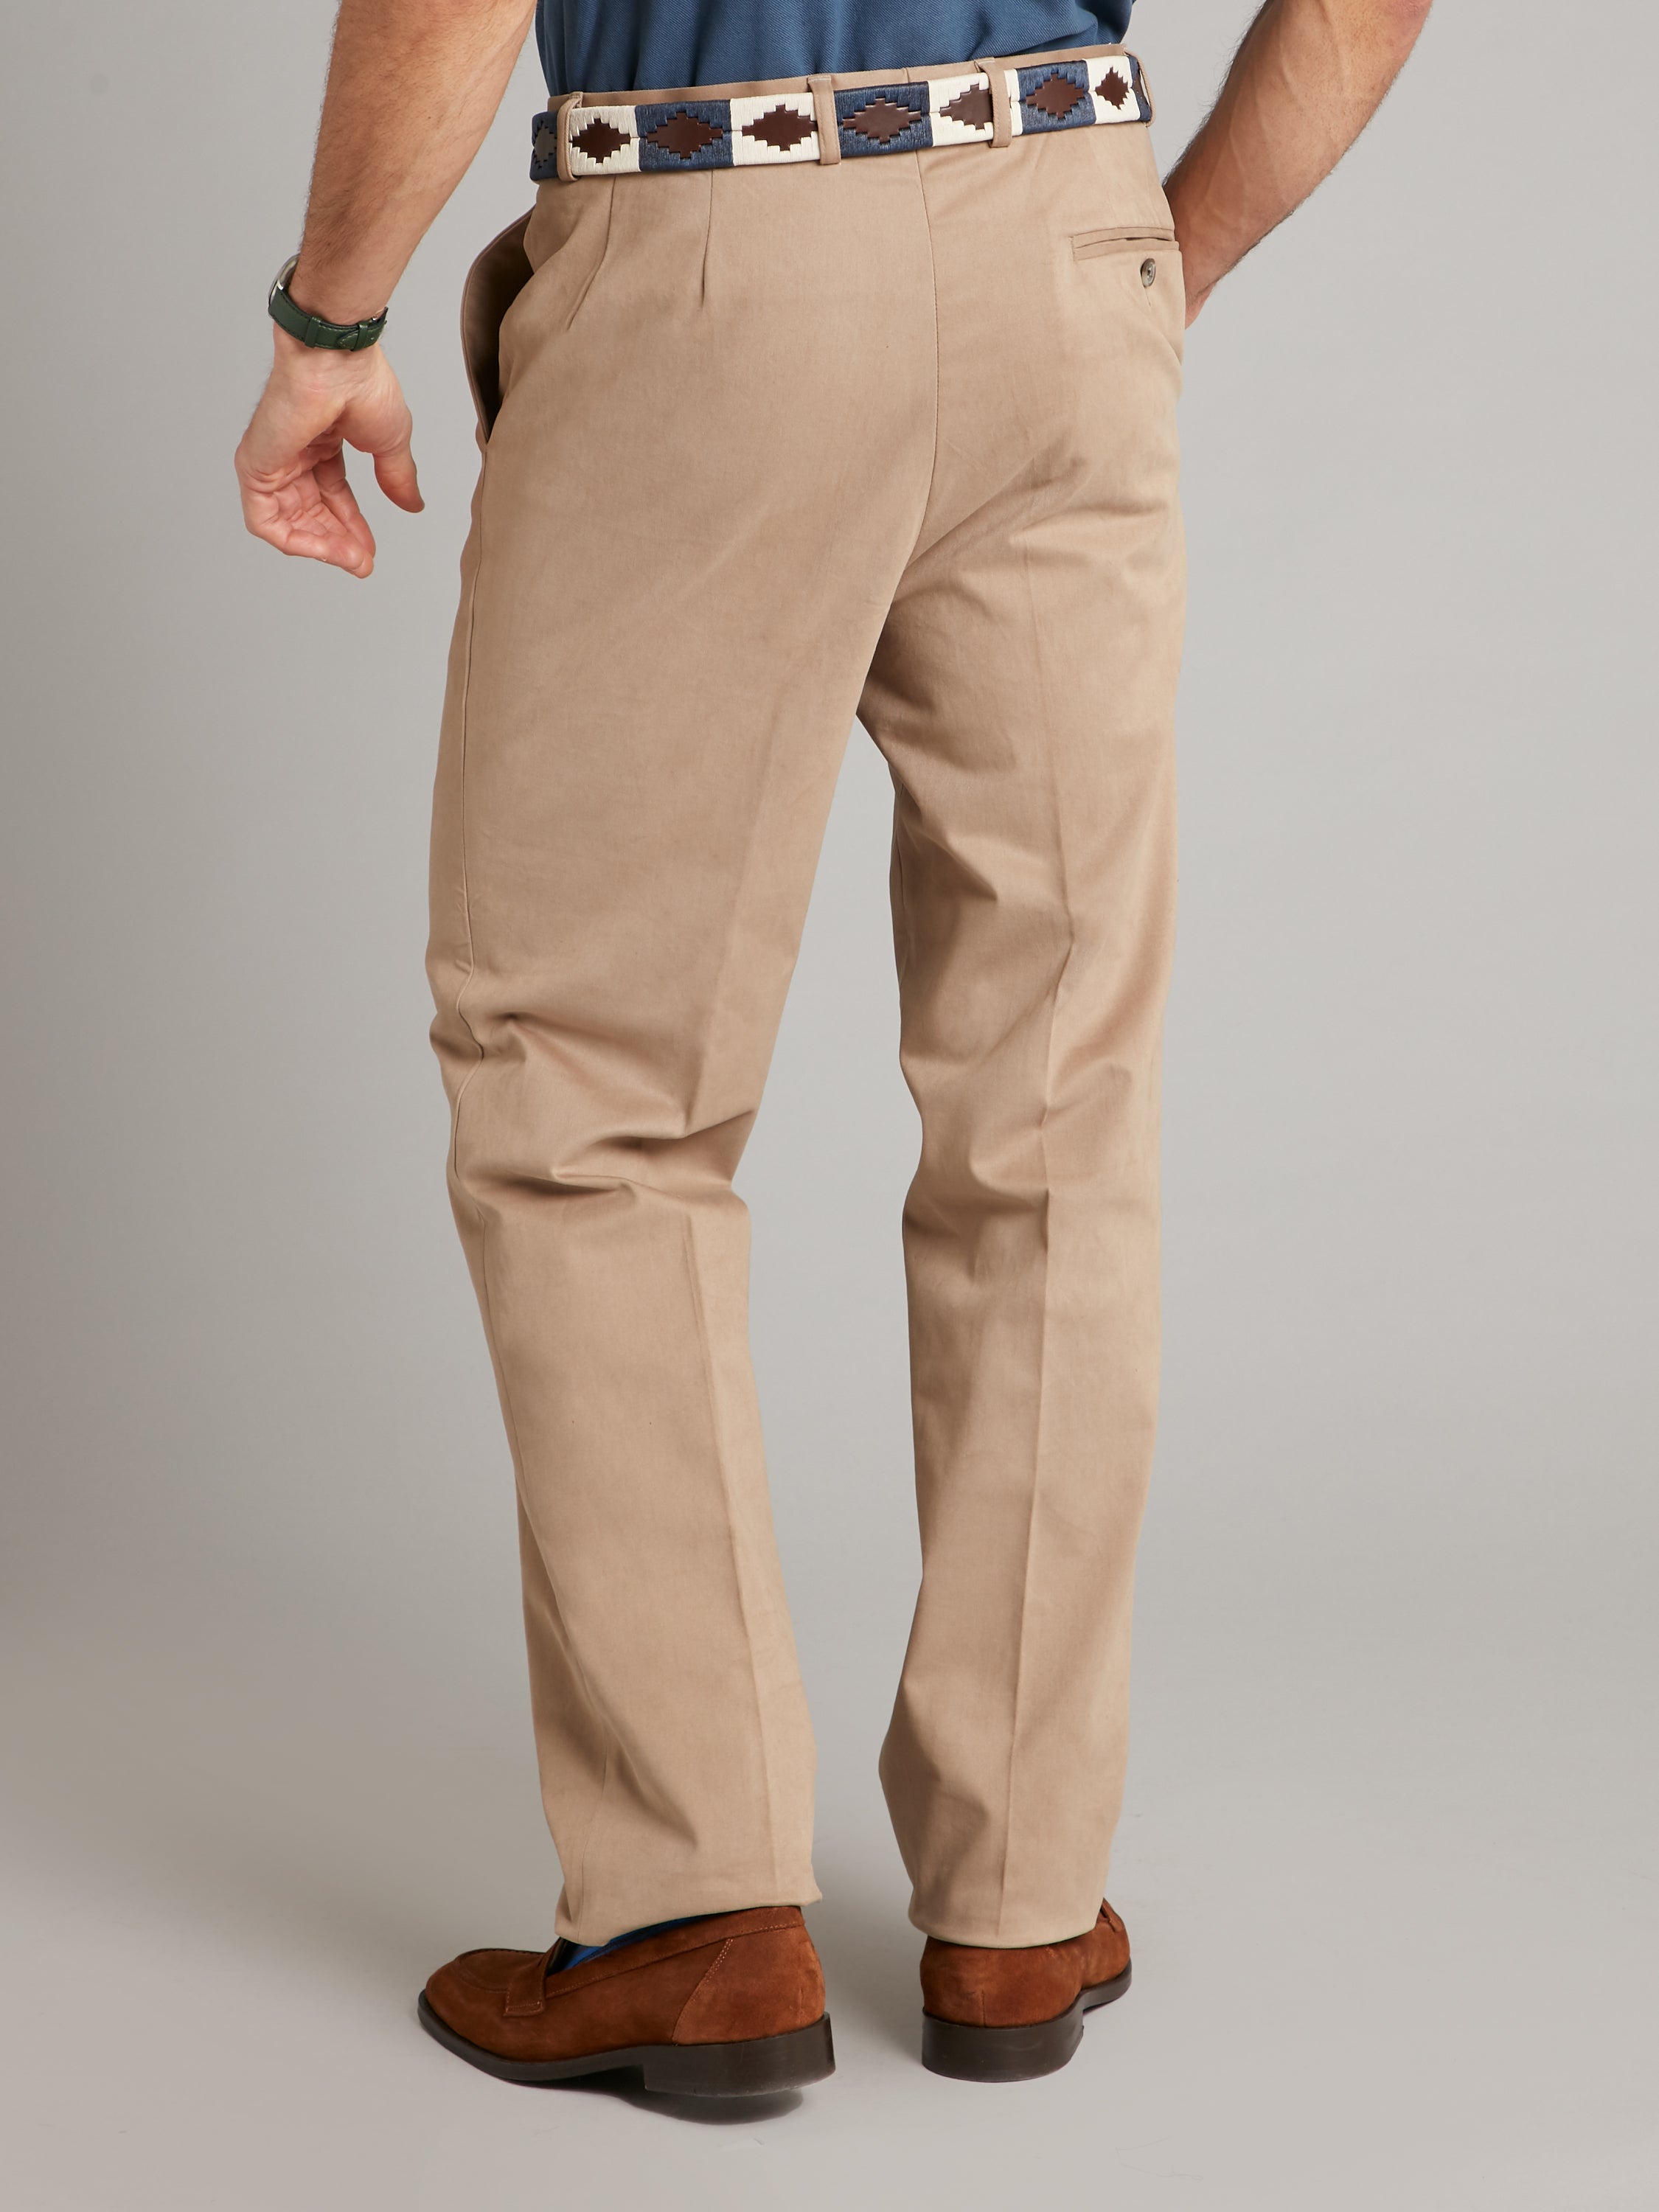 Higginson Pant in Khaki | Trousers & Shorts | Dickies UK.